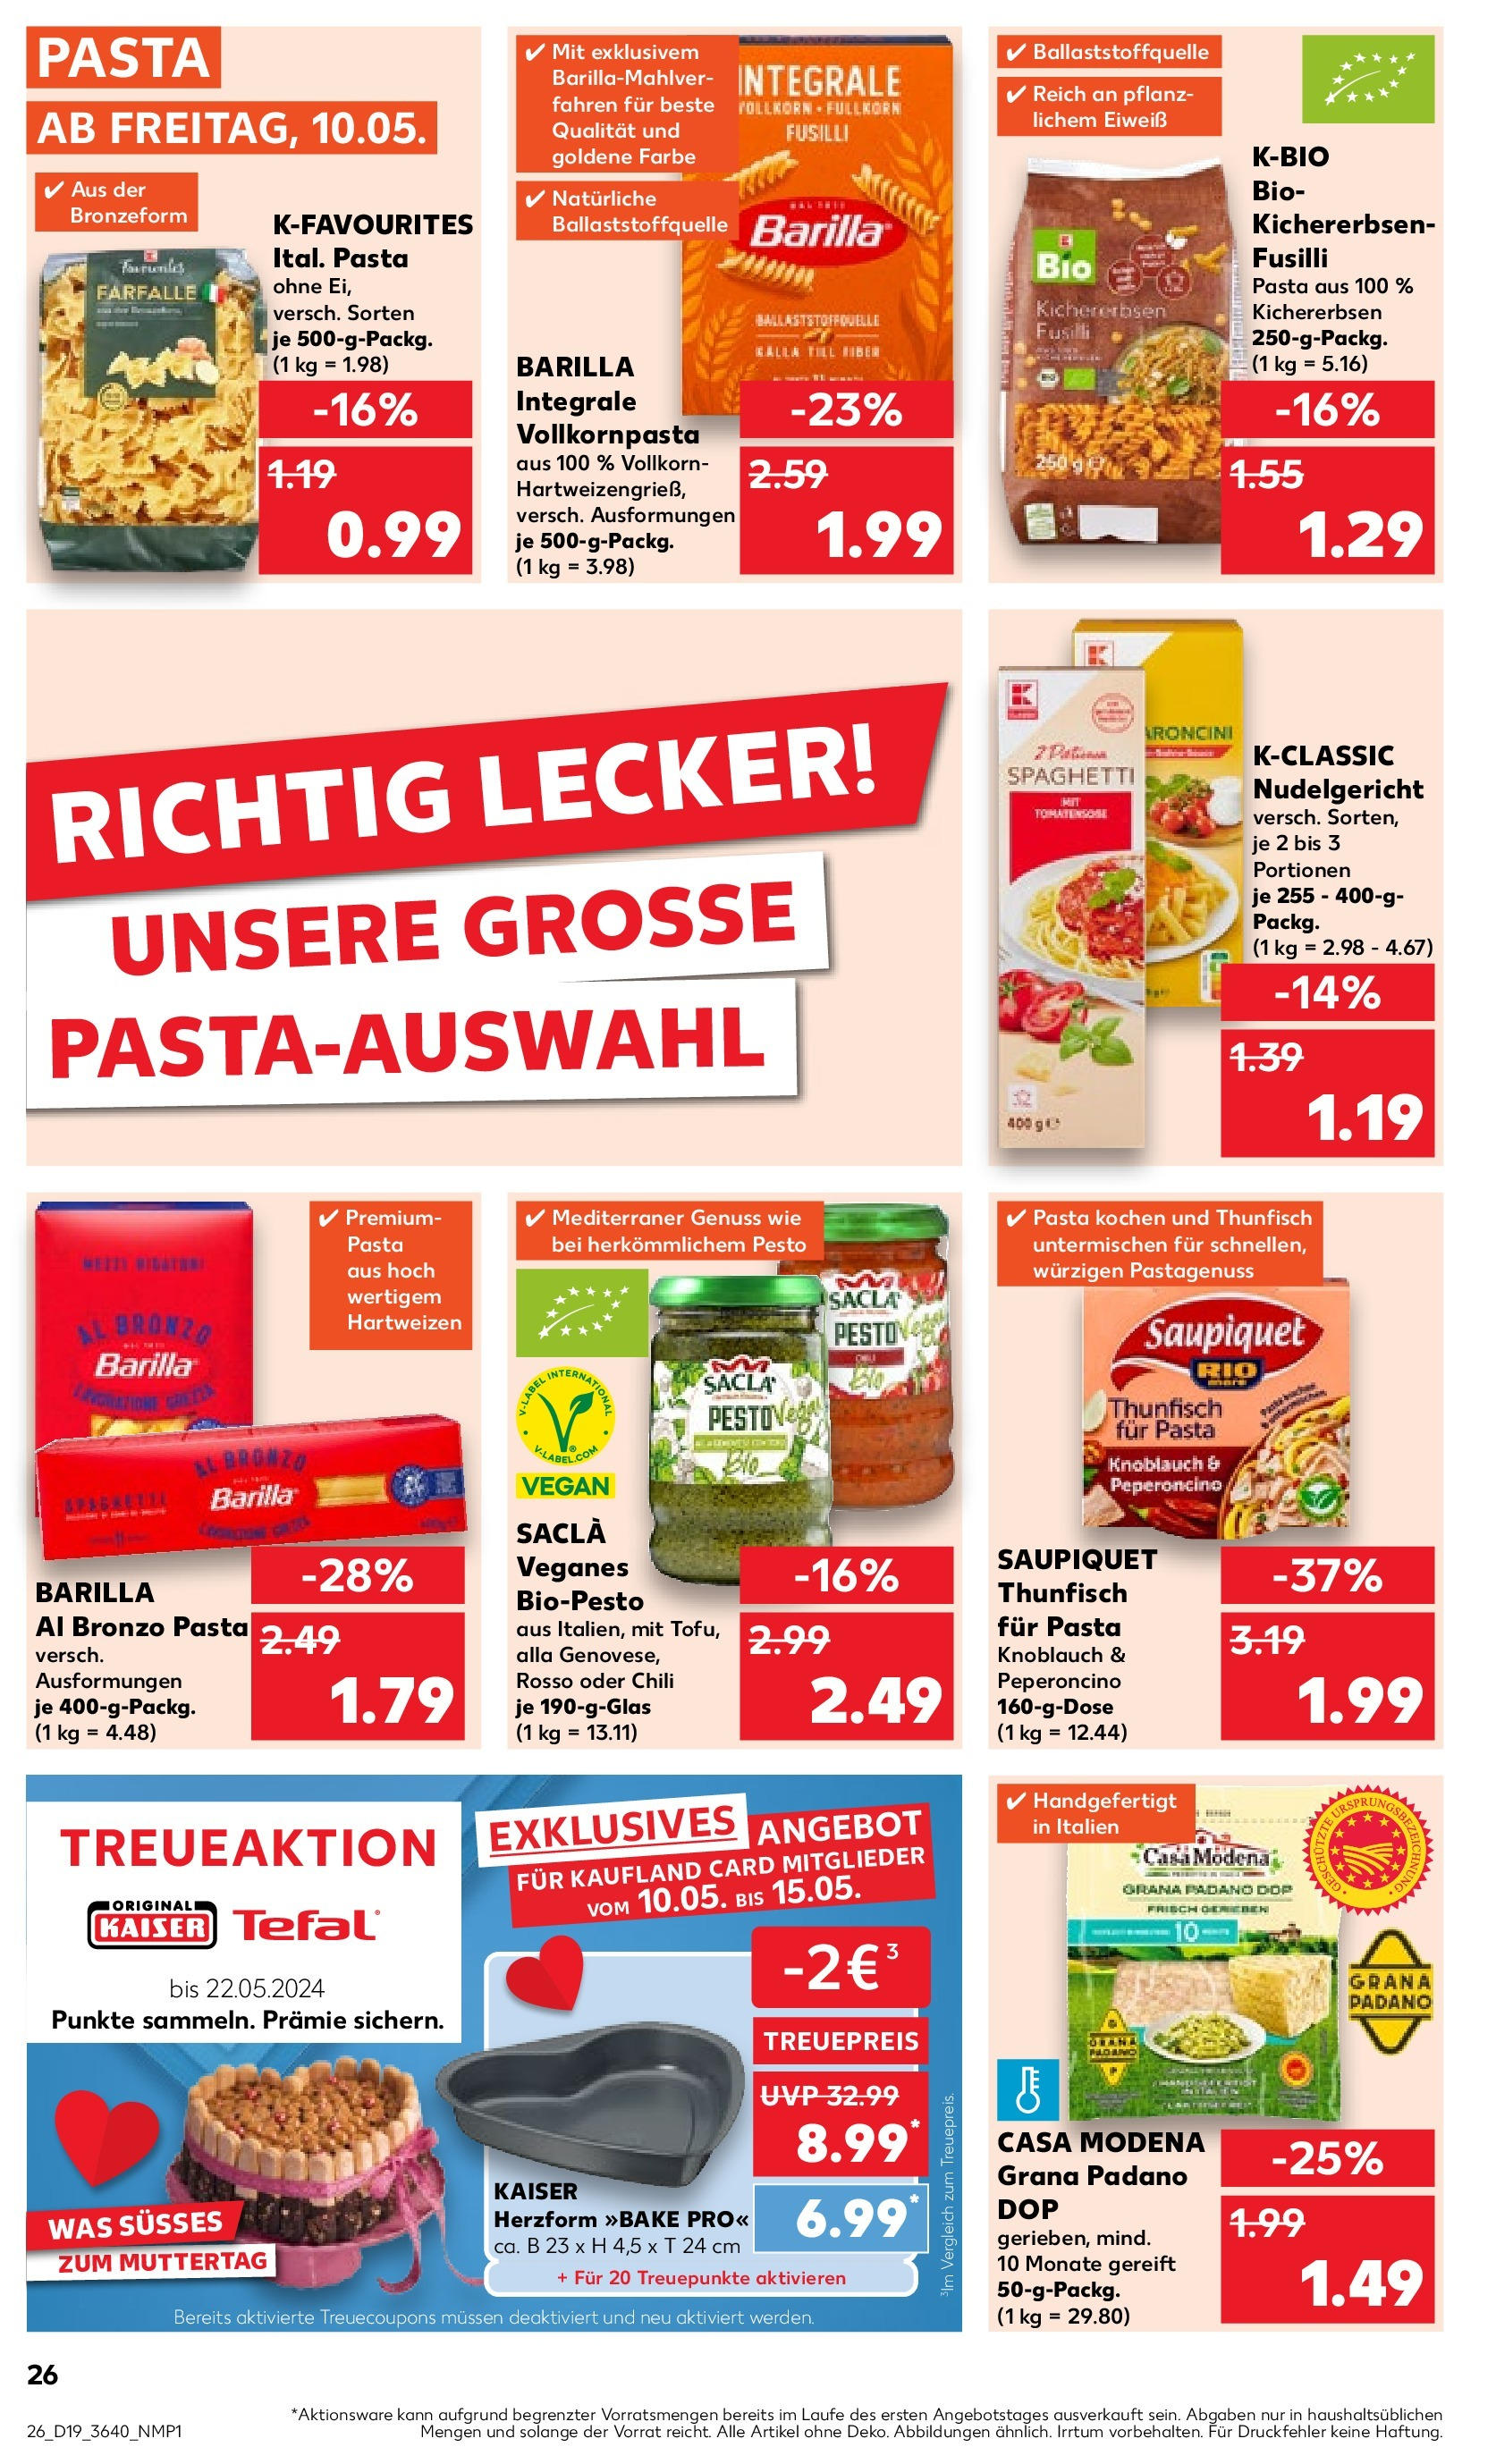 Kaufland - Mecklenburg-Vorpommern (ab 10.05.2024) » Angebote Online zum Blättern | Seite: 26 | Produkte: Barilla, Knoblauch, Chili, Pasta